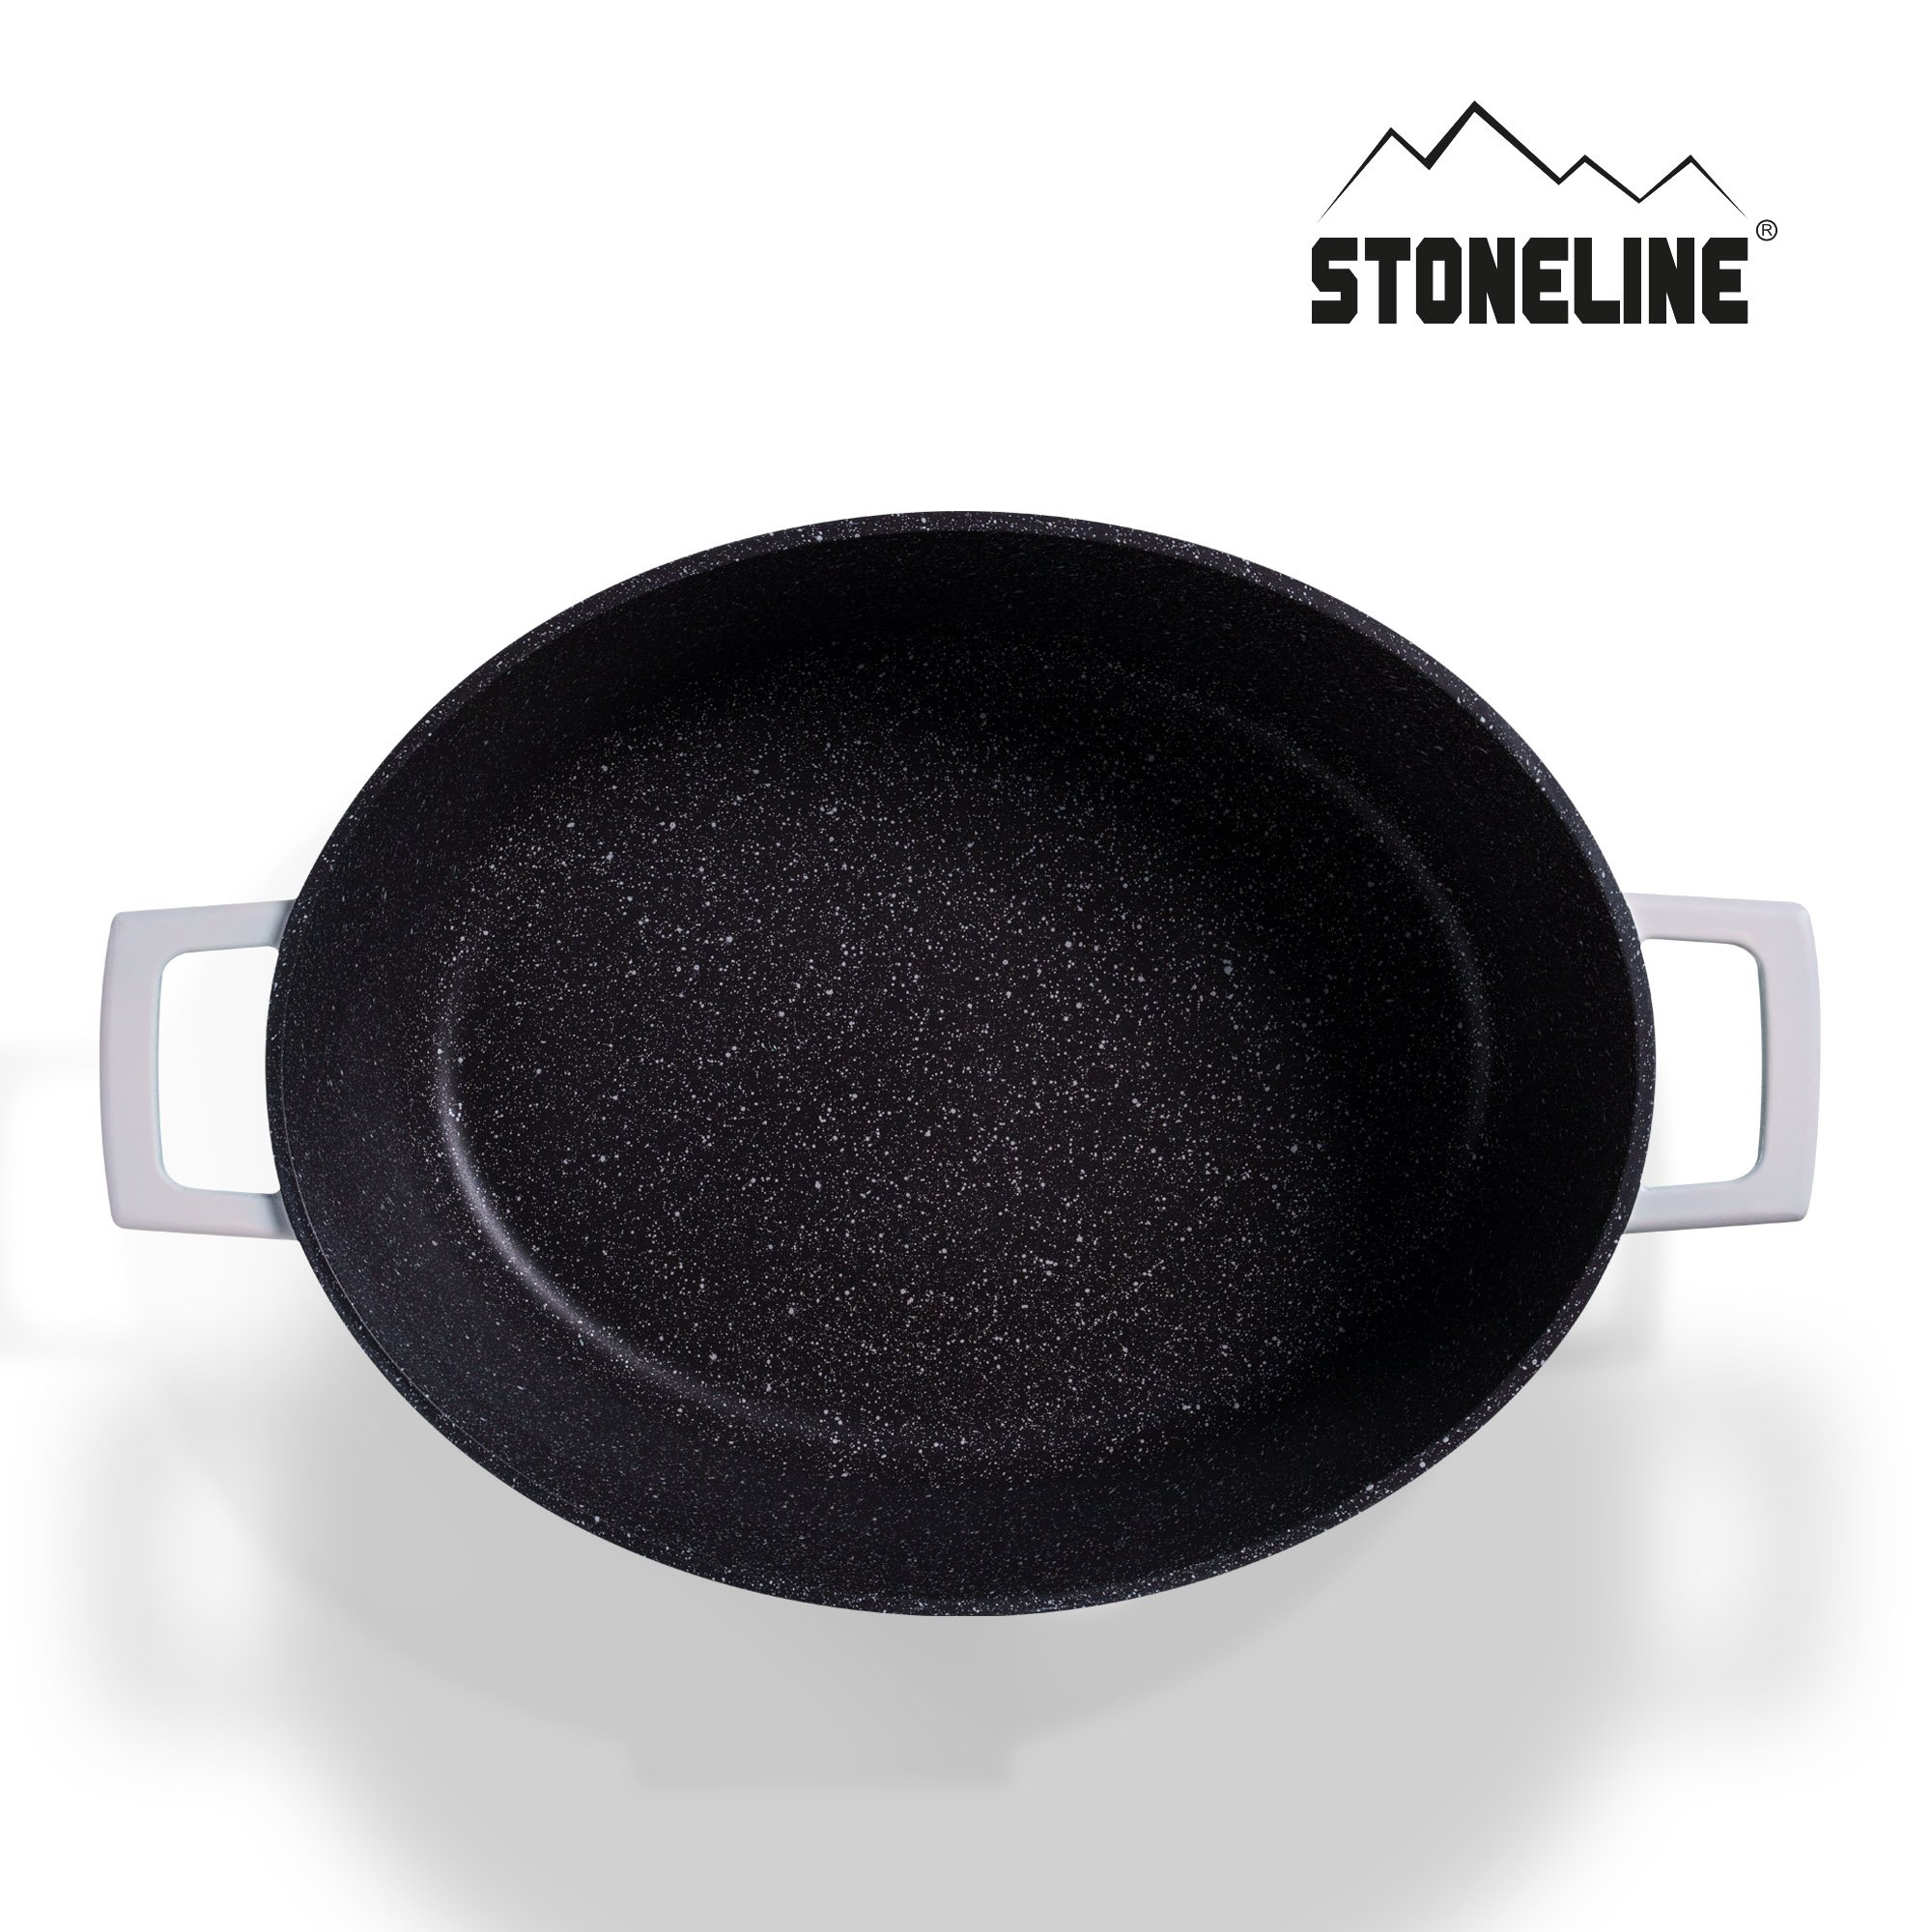 STONELINE® Gourmet asador 32x25 cm con tapa, apto para horno e inducción, antiadherente, rosa